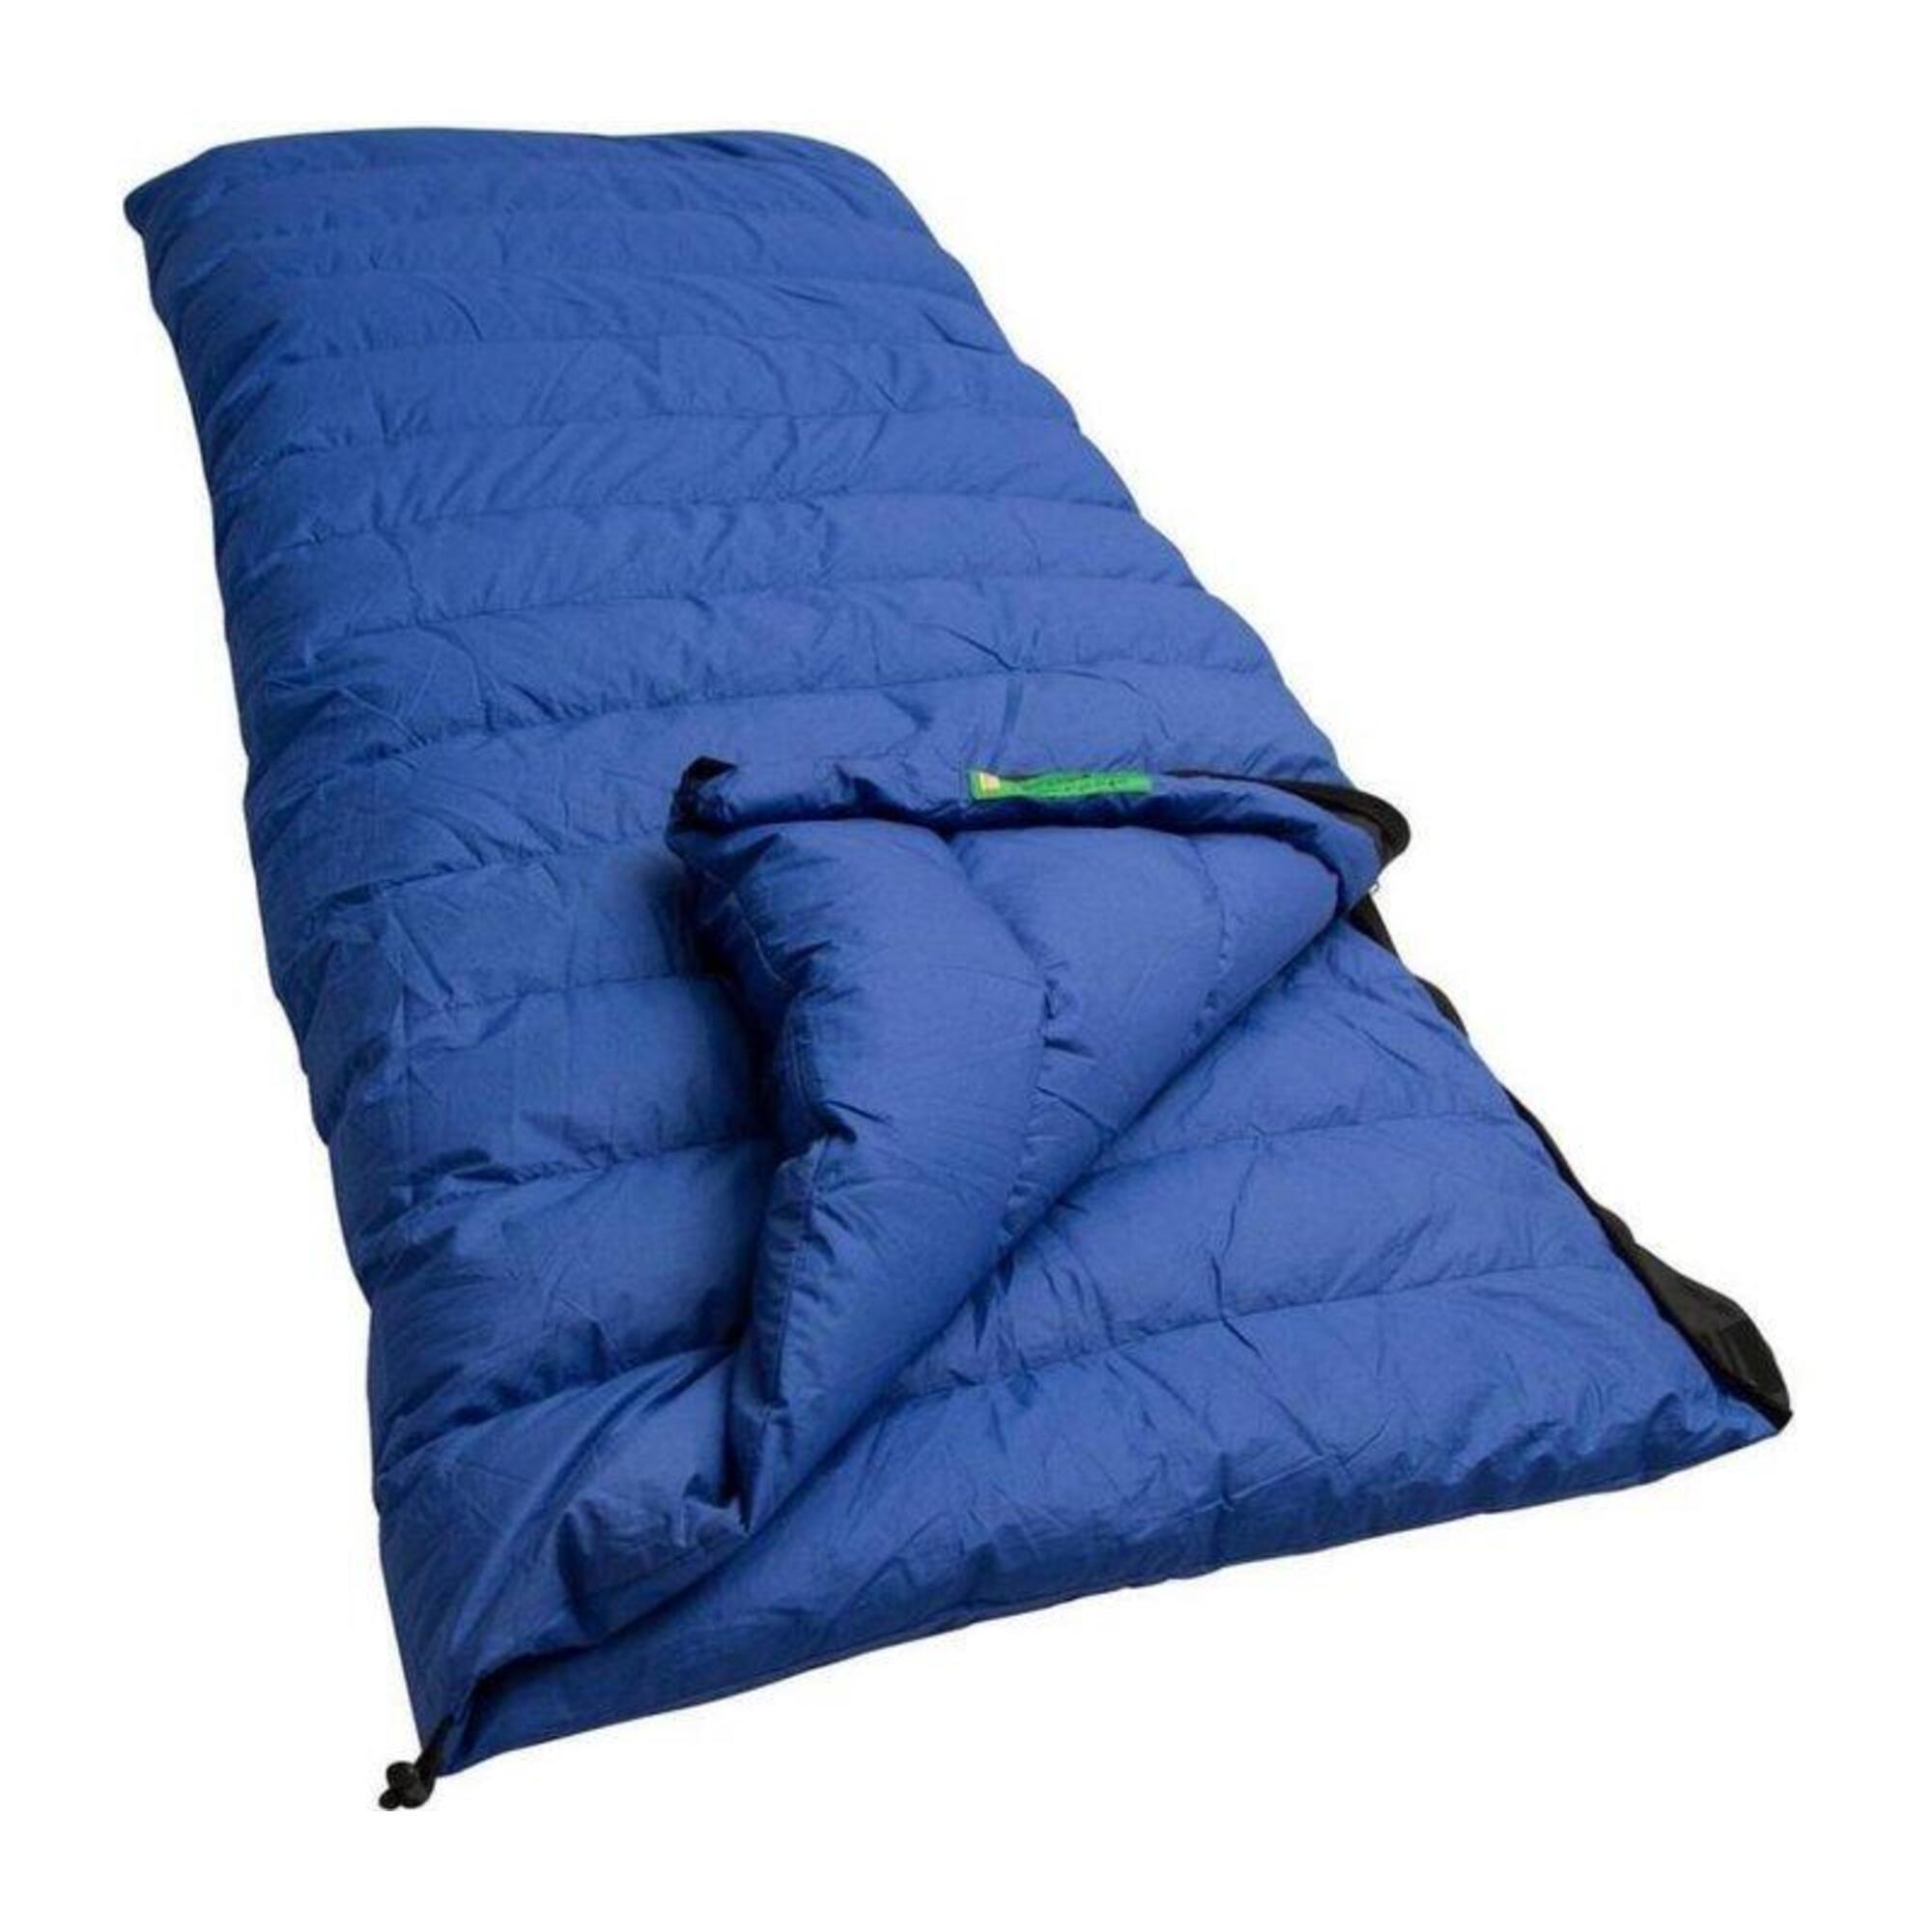 спальный мешок сталкер богатырь синий с кап моск сетка Спальный мешок Lowland Companion CC 1 с пуховым одеялом, синий